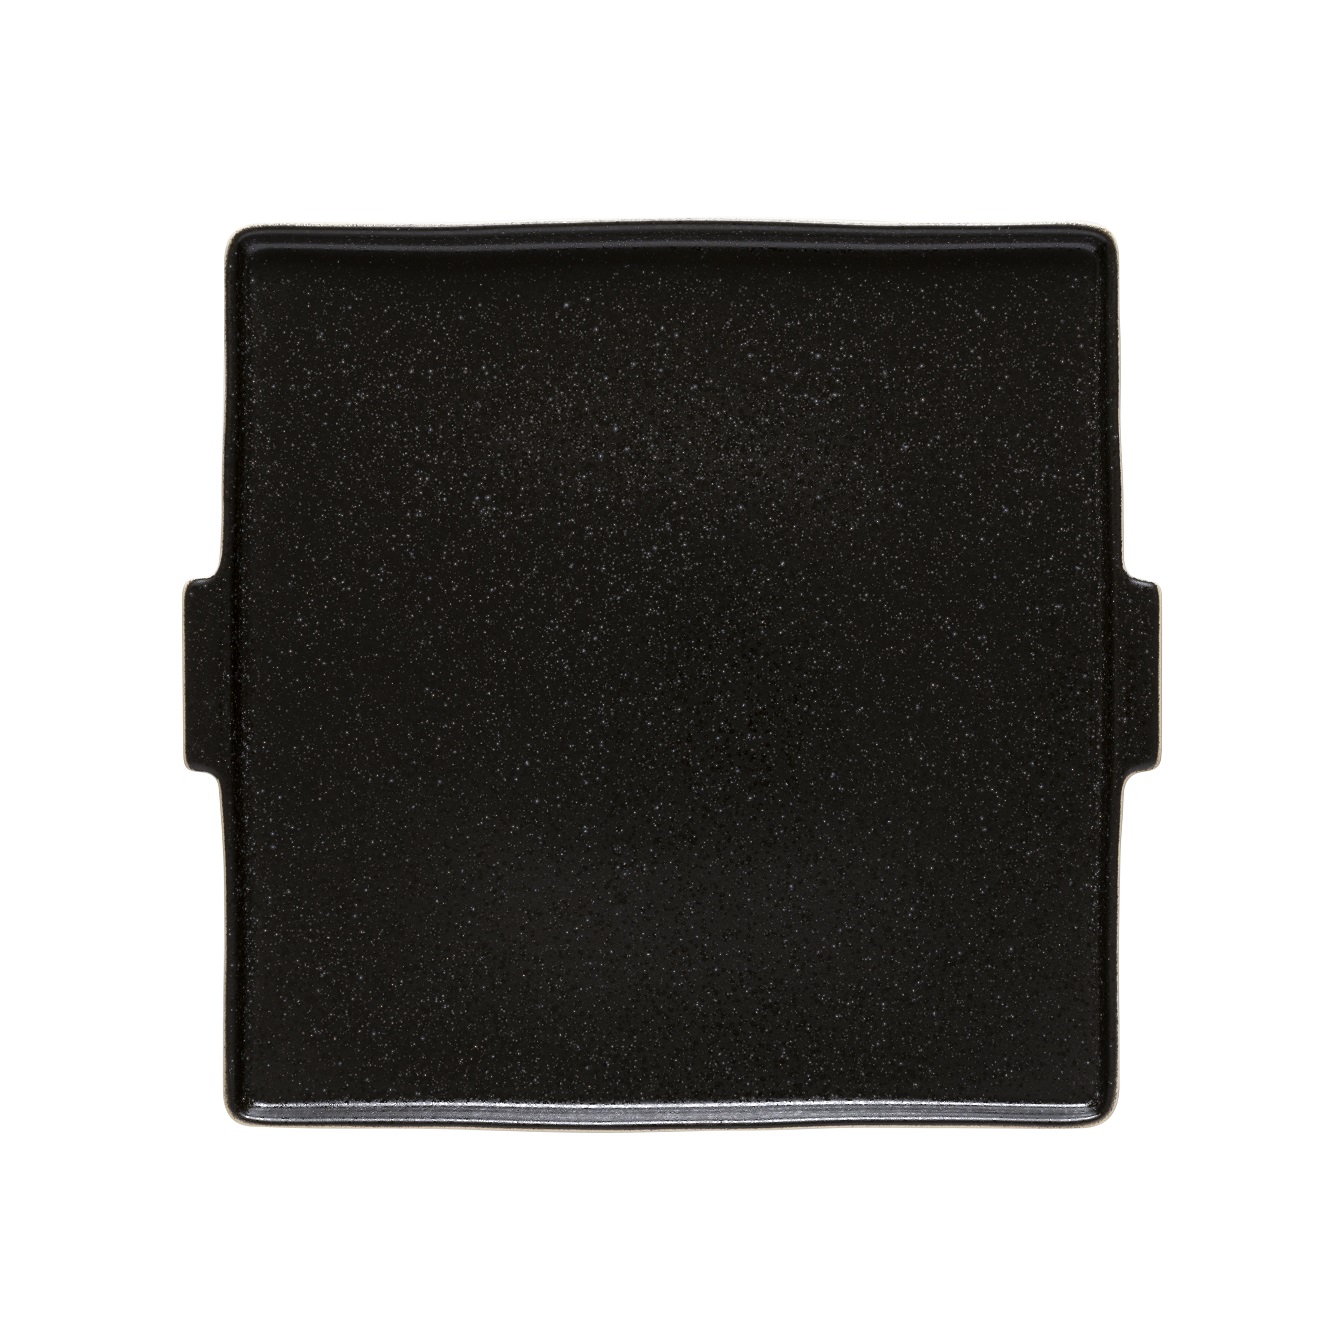 Notos Lattitude Black Square Serving Plate 31cm Gift